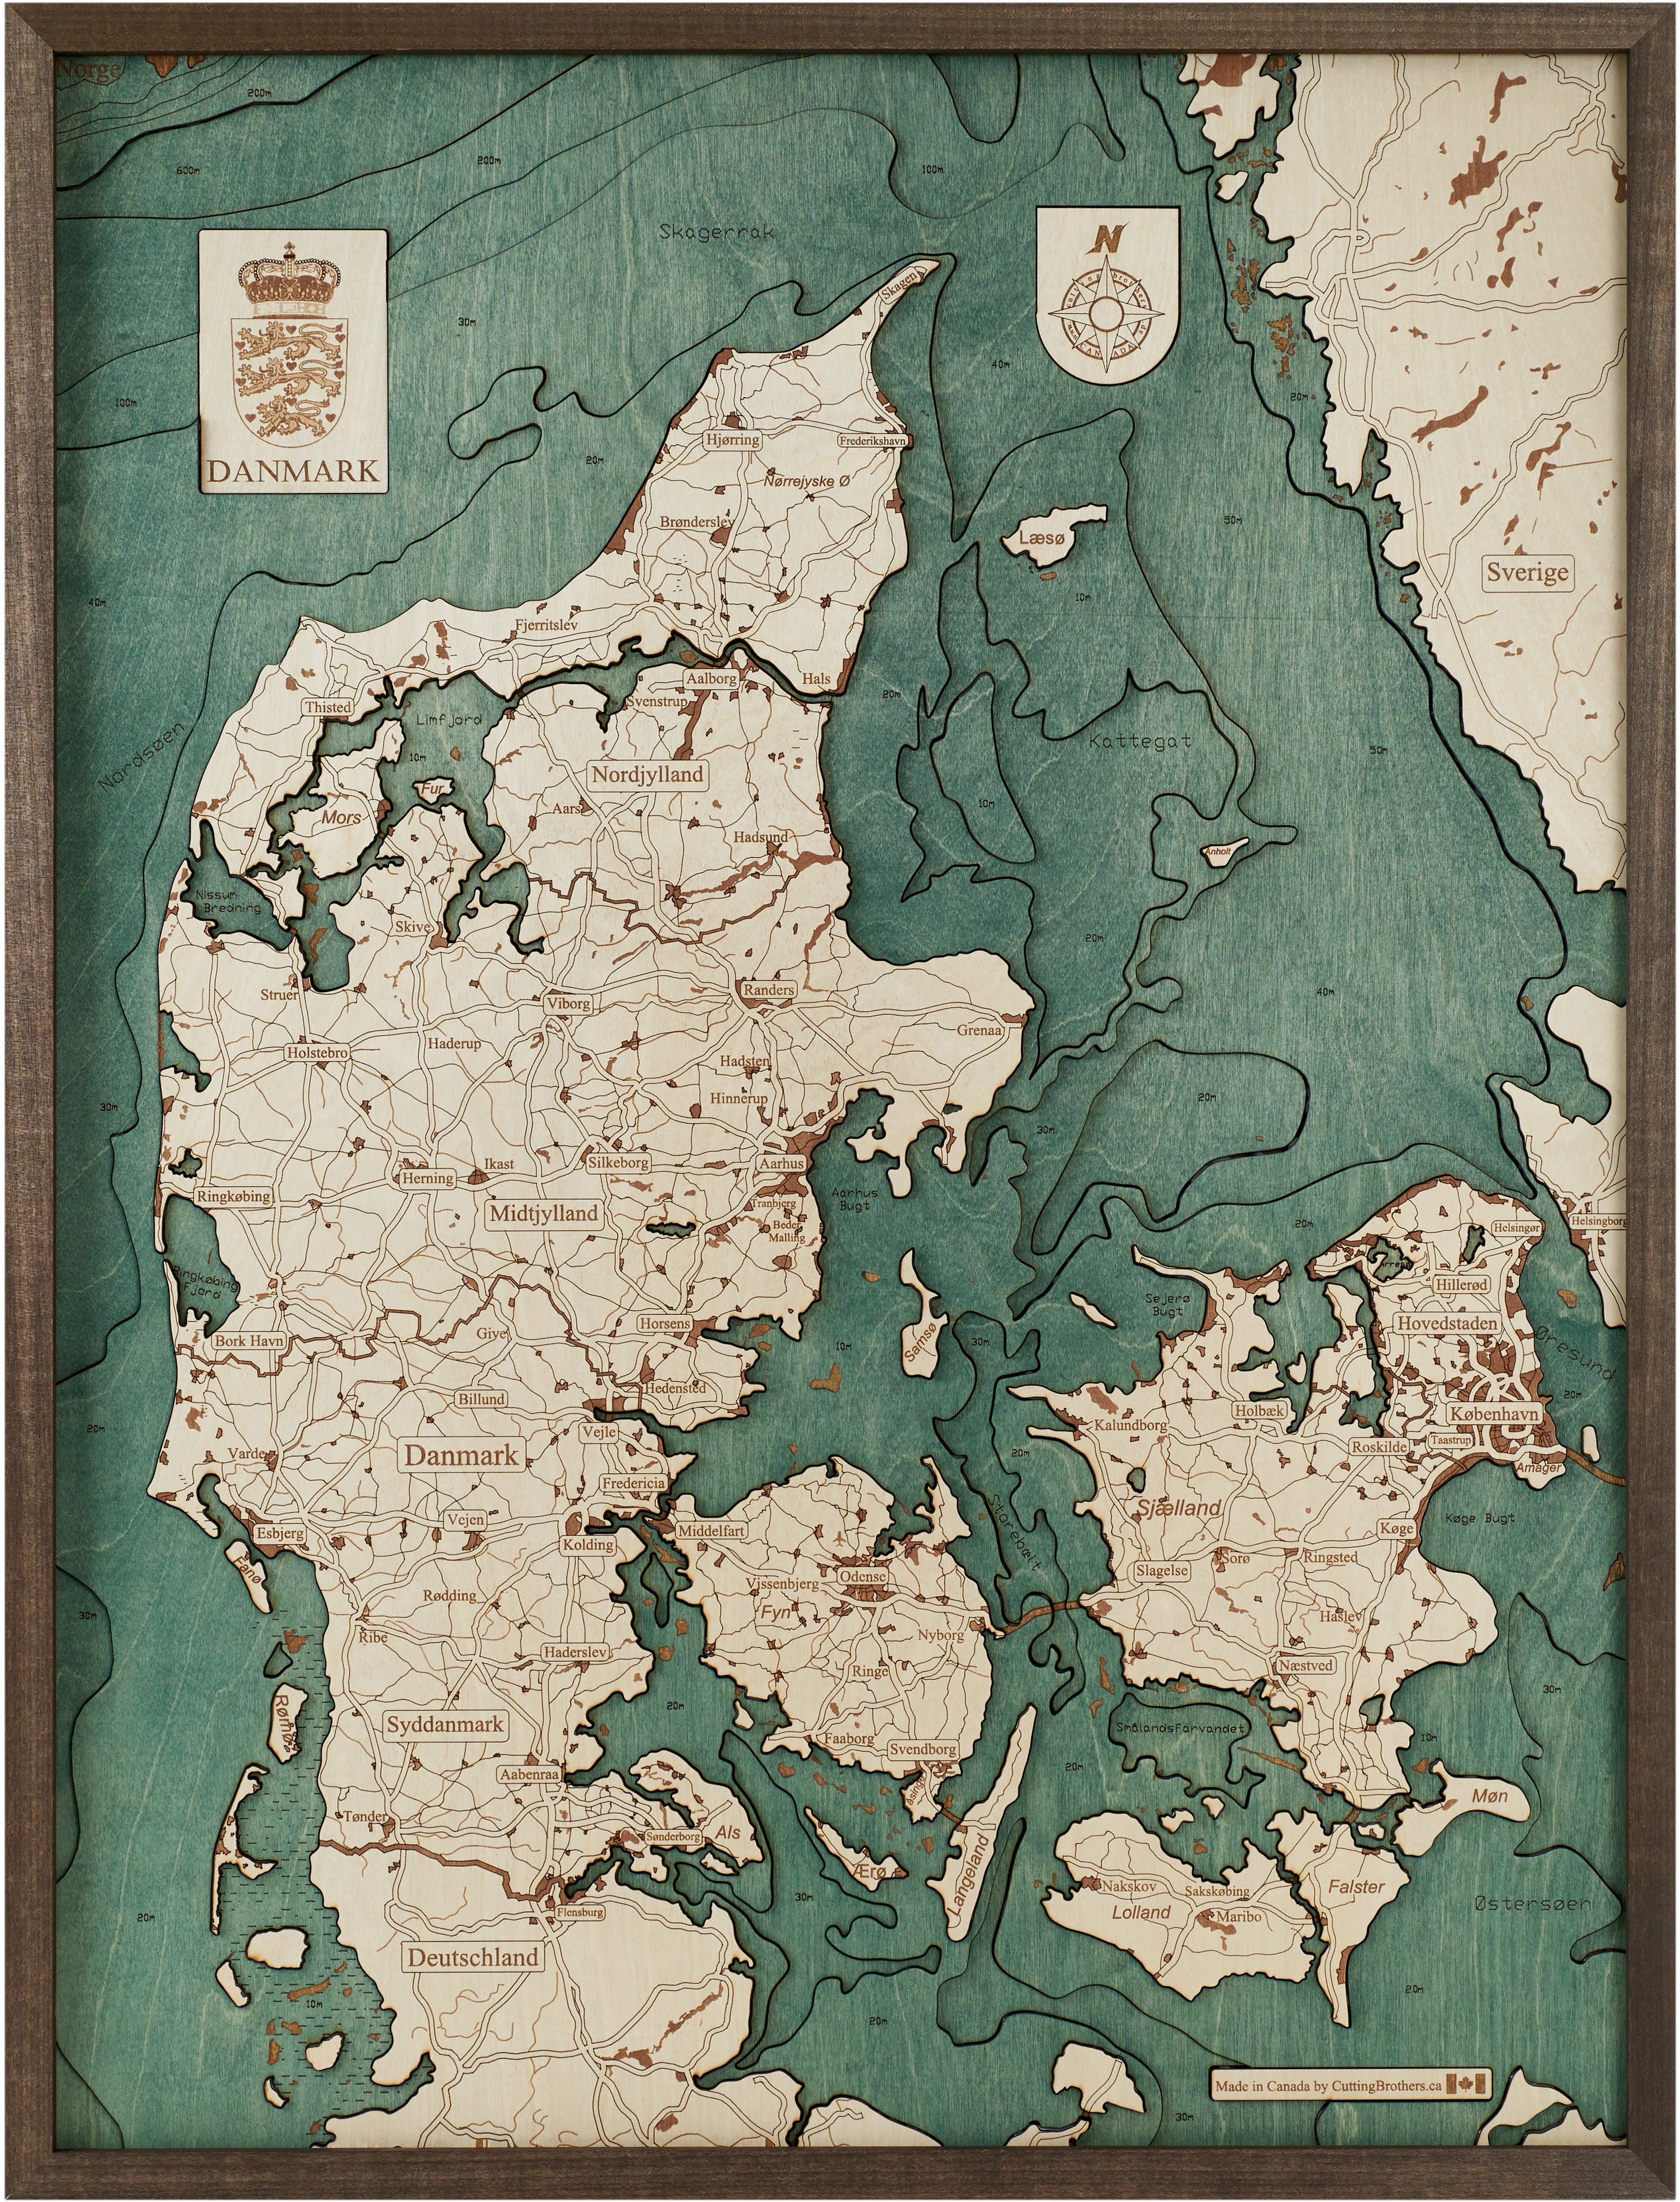 COPENHAGEN 3D Wooden Wall Map - Version L